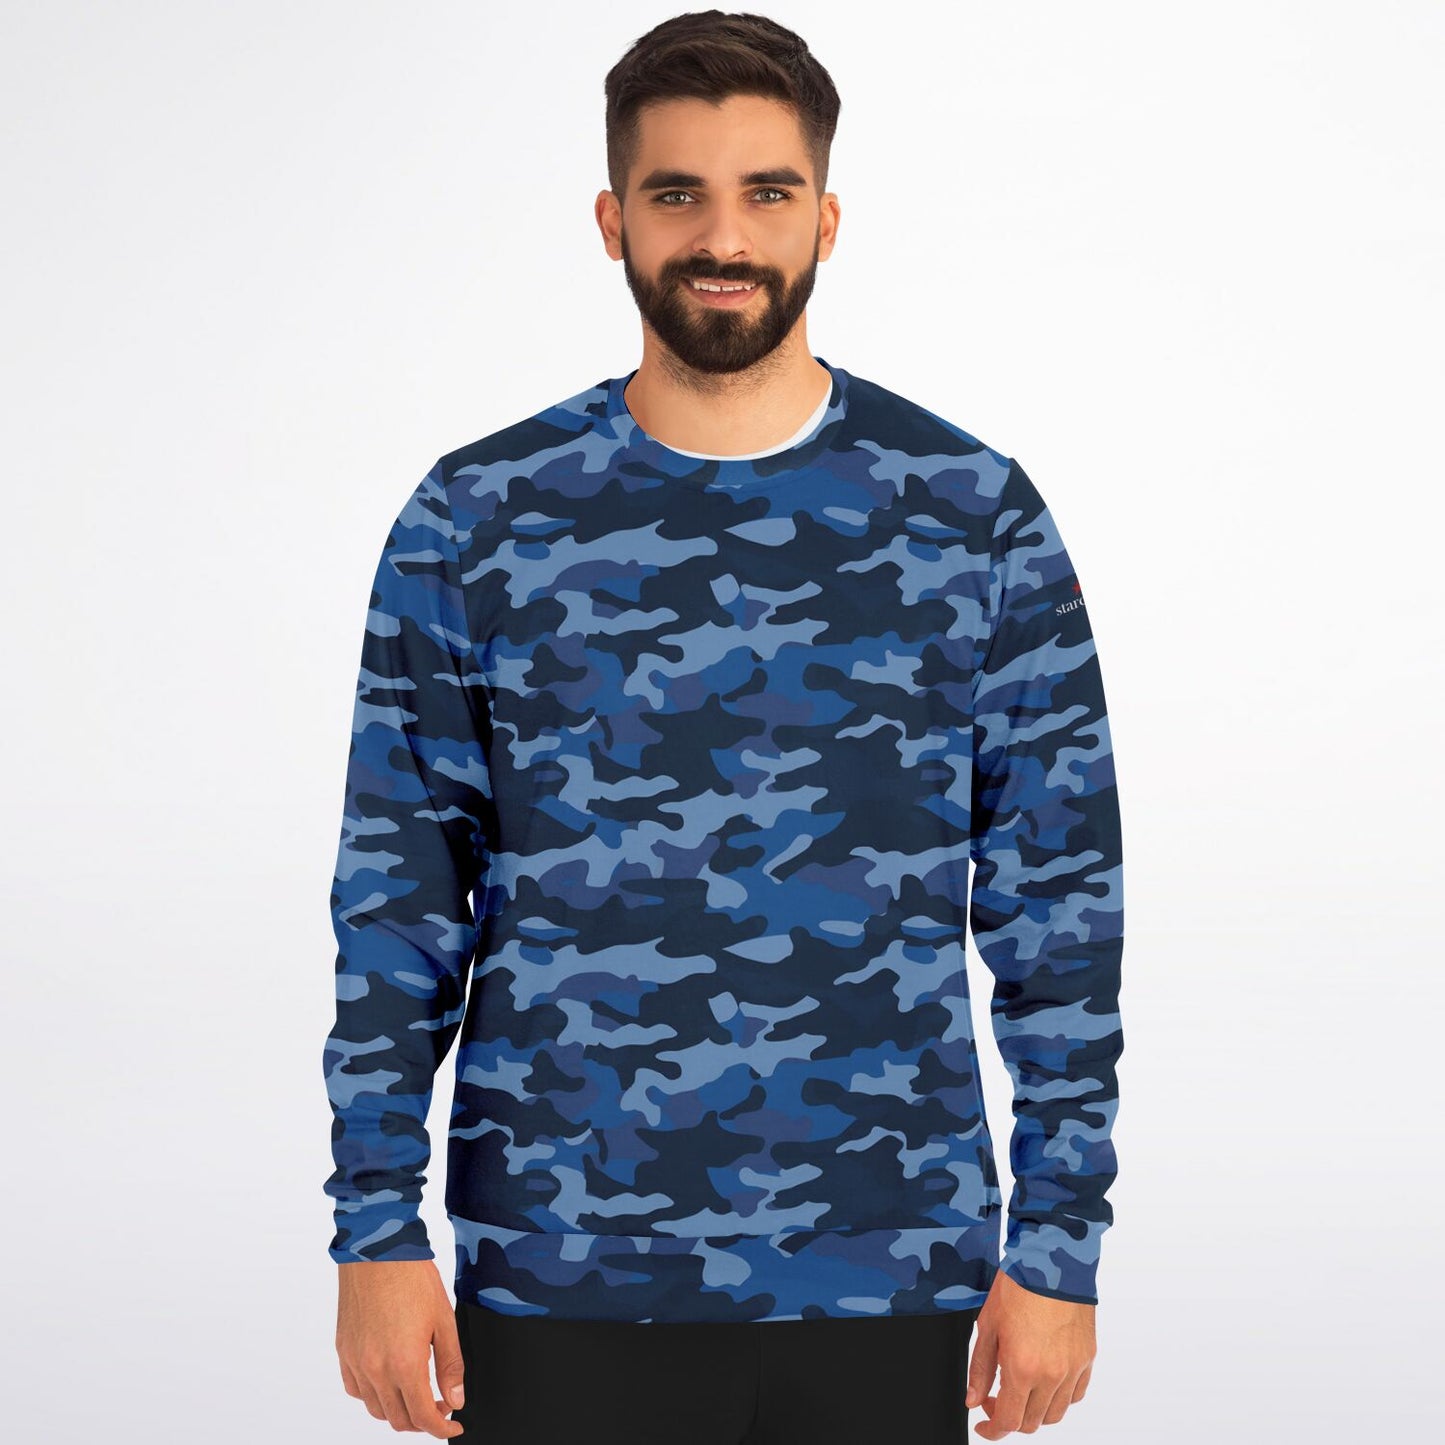 Blue Camo Sweatshirt, Camouflage Dark Navy Crewneck Fleece Cotton Sweater Jumper Pullover Men Women Adult Aesthetic Designer Top